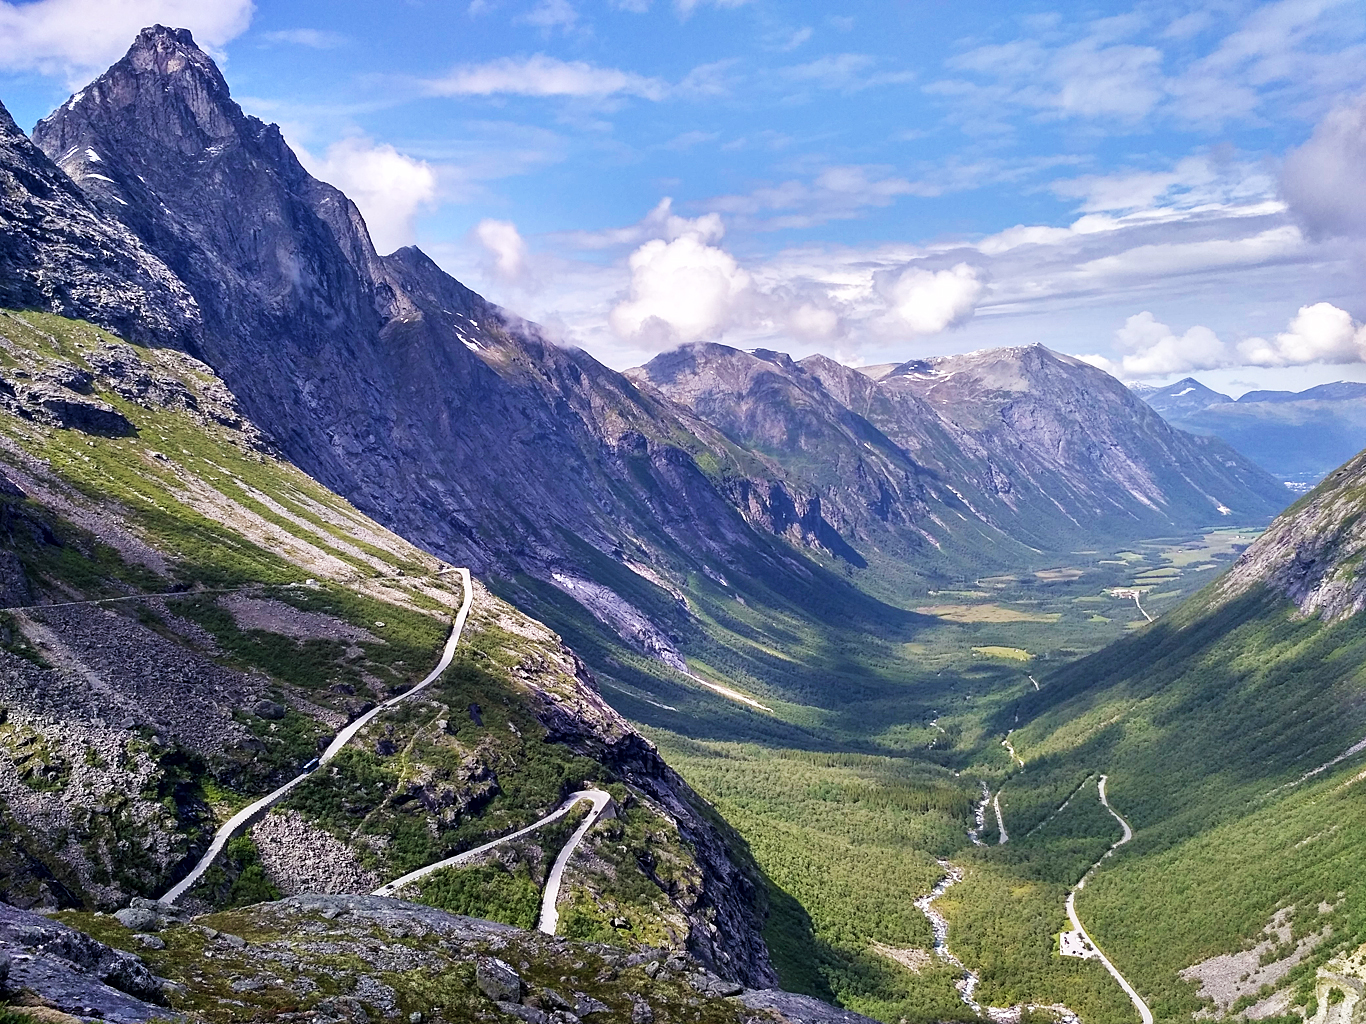 Cesta trollů sklesá v 11 serpentinách 900 metrů a pokračuje údolím Romsdalen